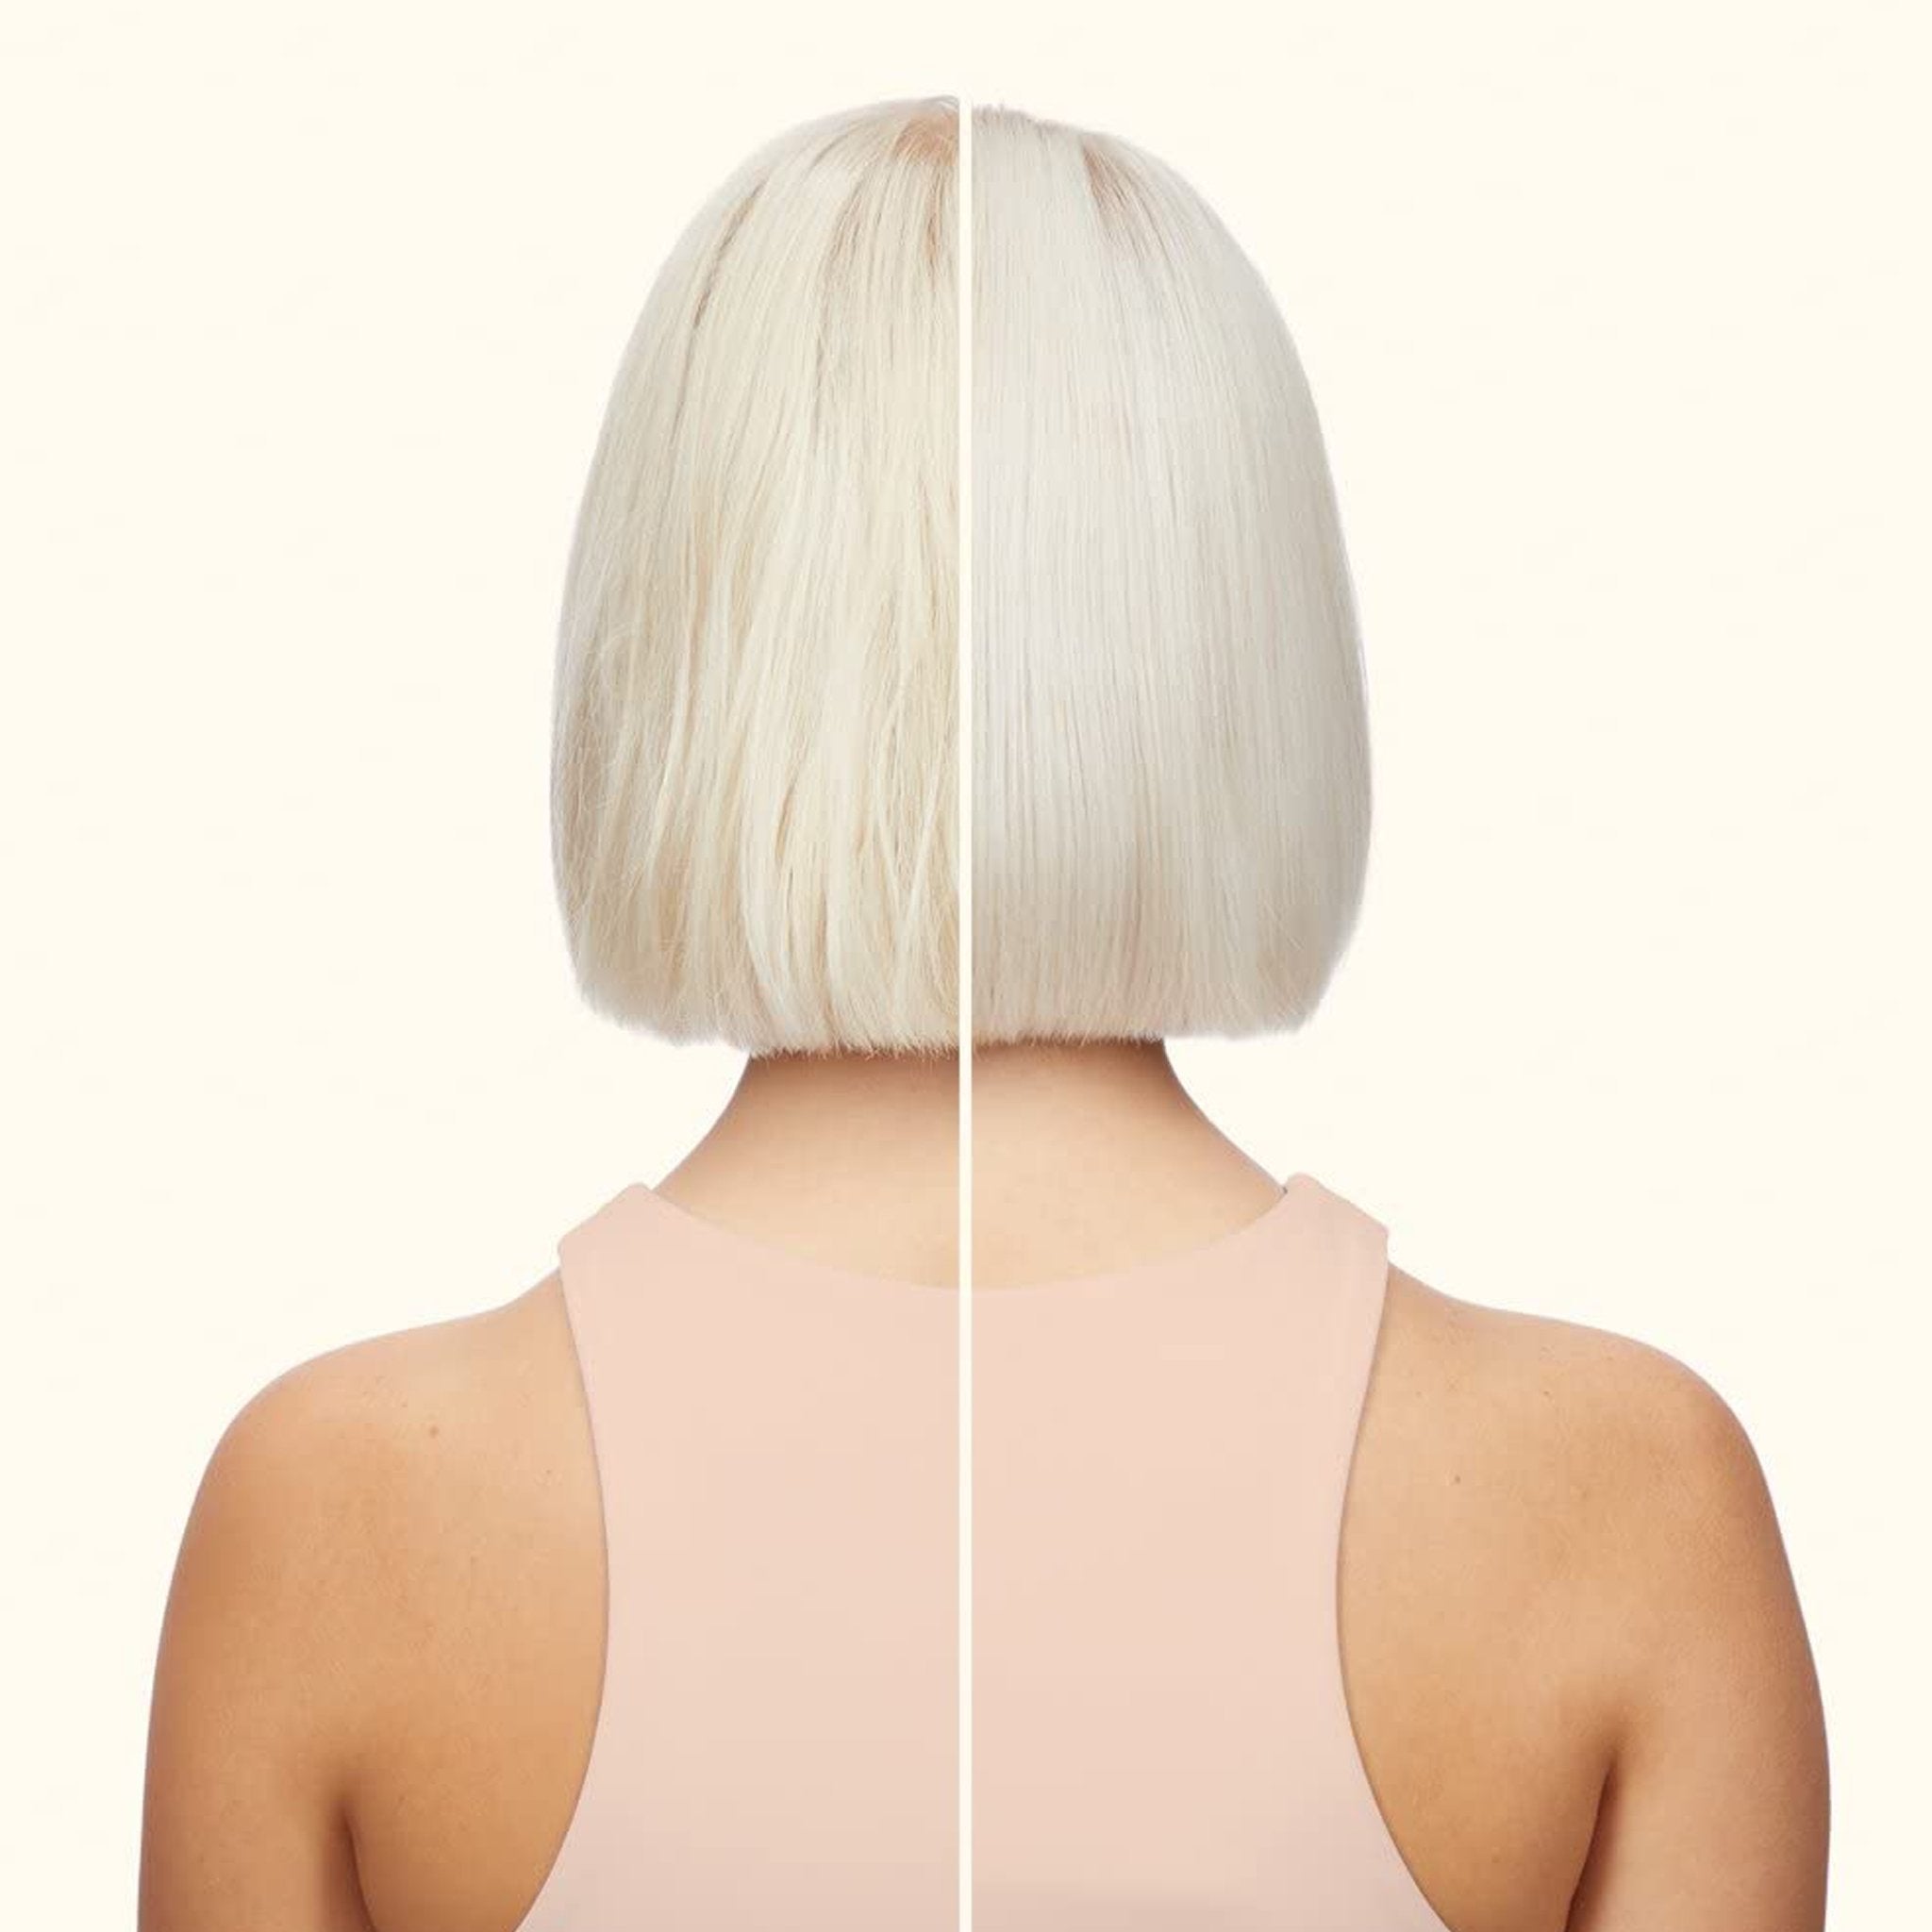 Amika. Shampoing Réparateur pour Blonds Froids Bust Your Brass - 1000 ml - Concept C. Shop